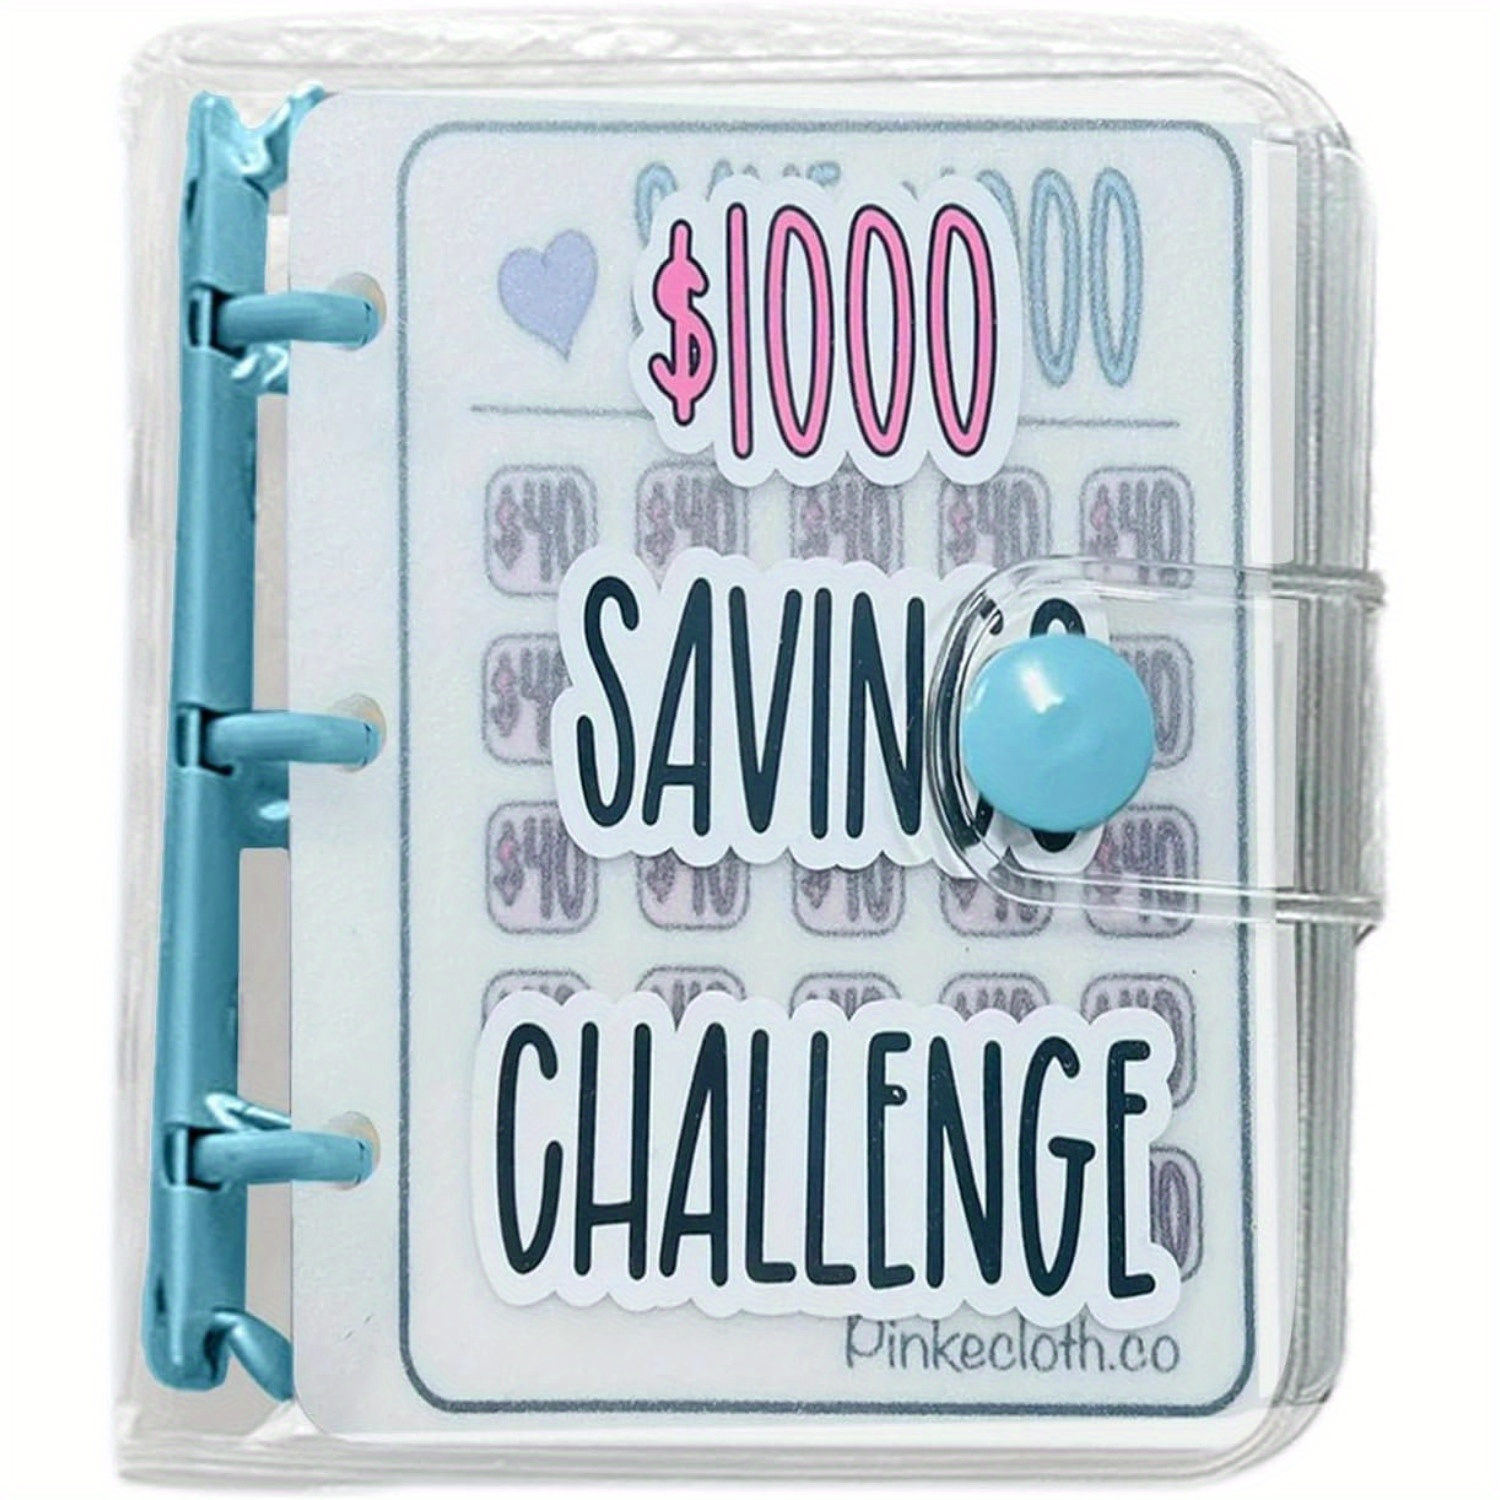  Kit de carpeta de desafío de ahorro de dinero, divertido  organizador de libros con sobres de efectivo para 100 días de relleno de  efectivo, presupuesto, reemplazo de caja de ahorro de